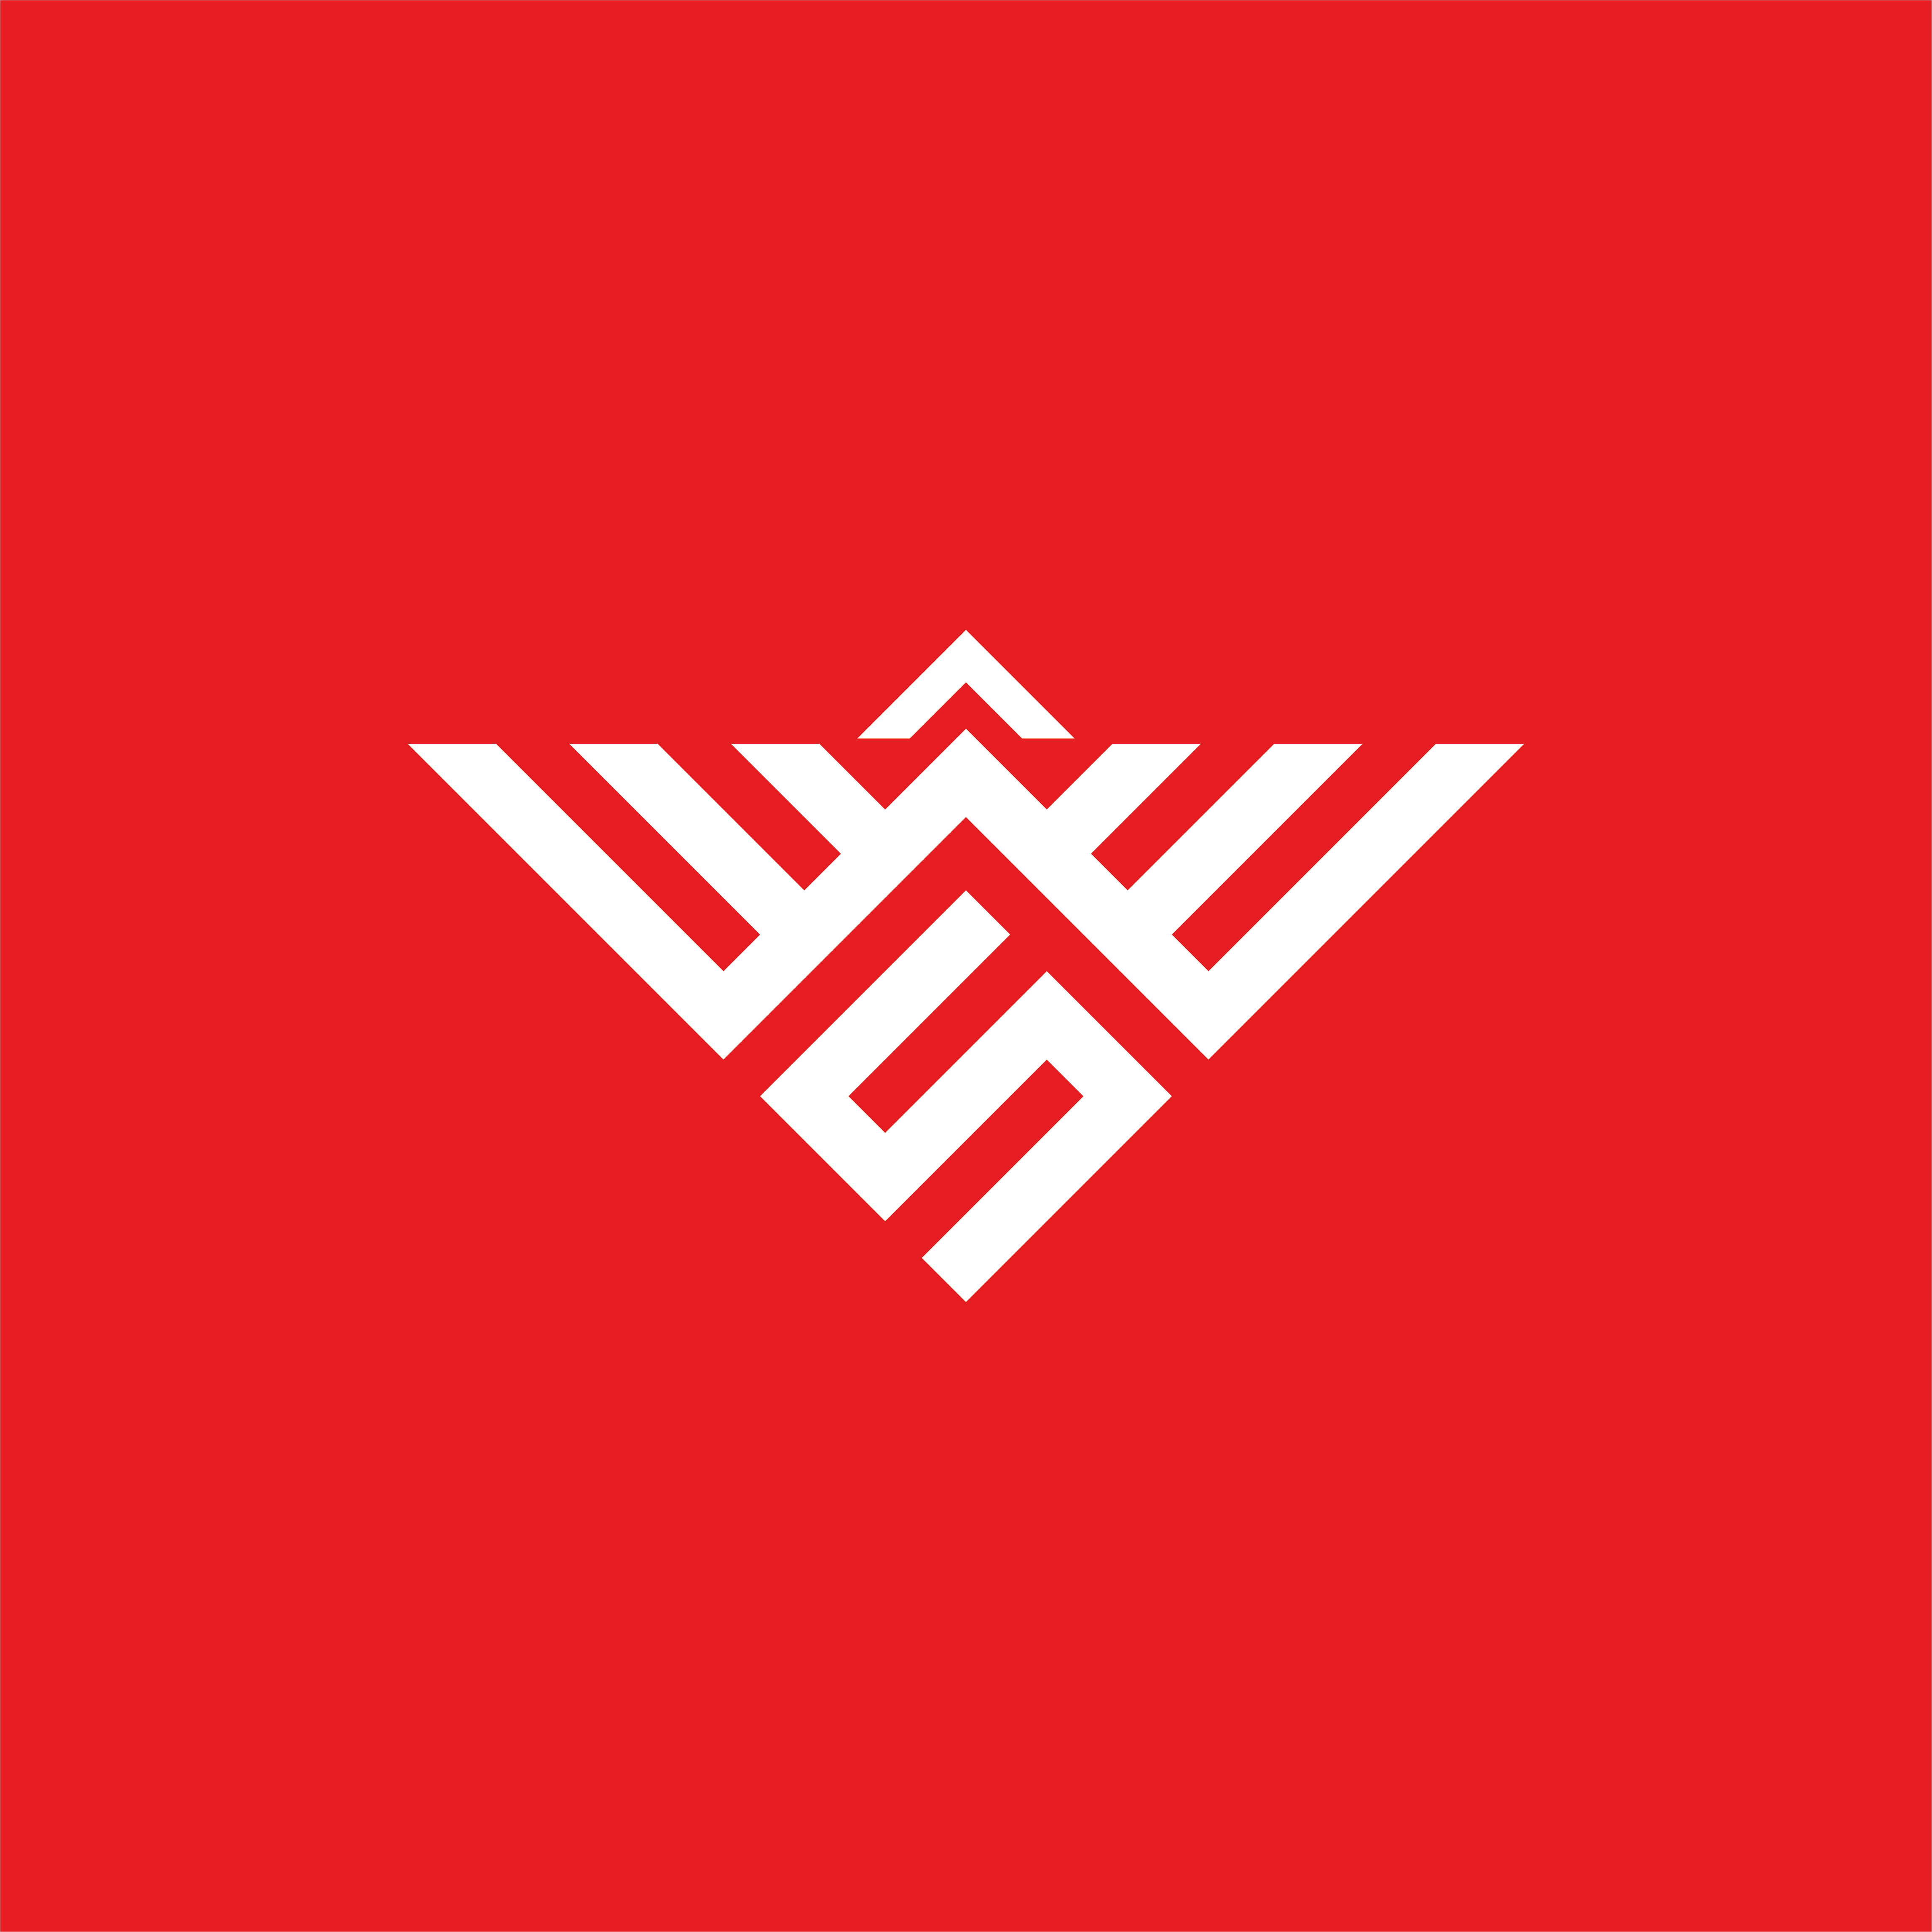 Monogram logo design preview image.